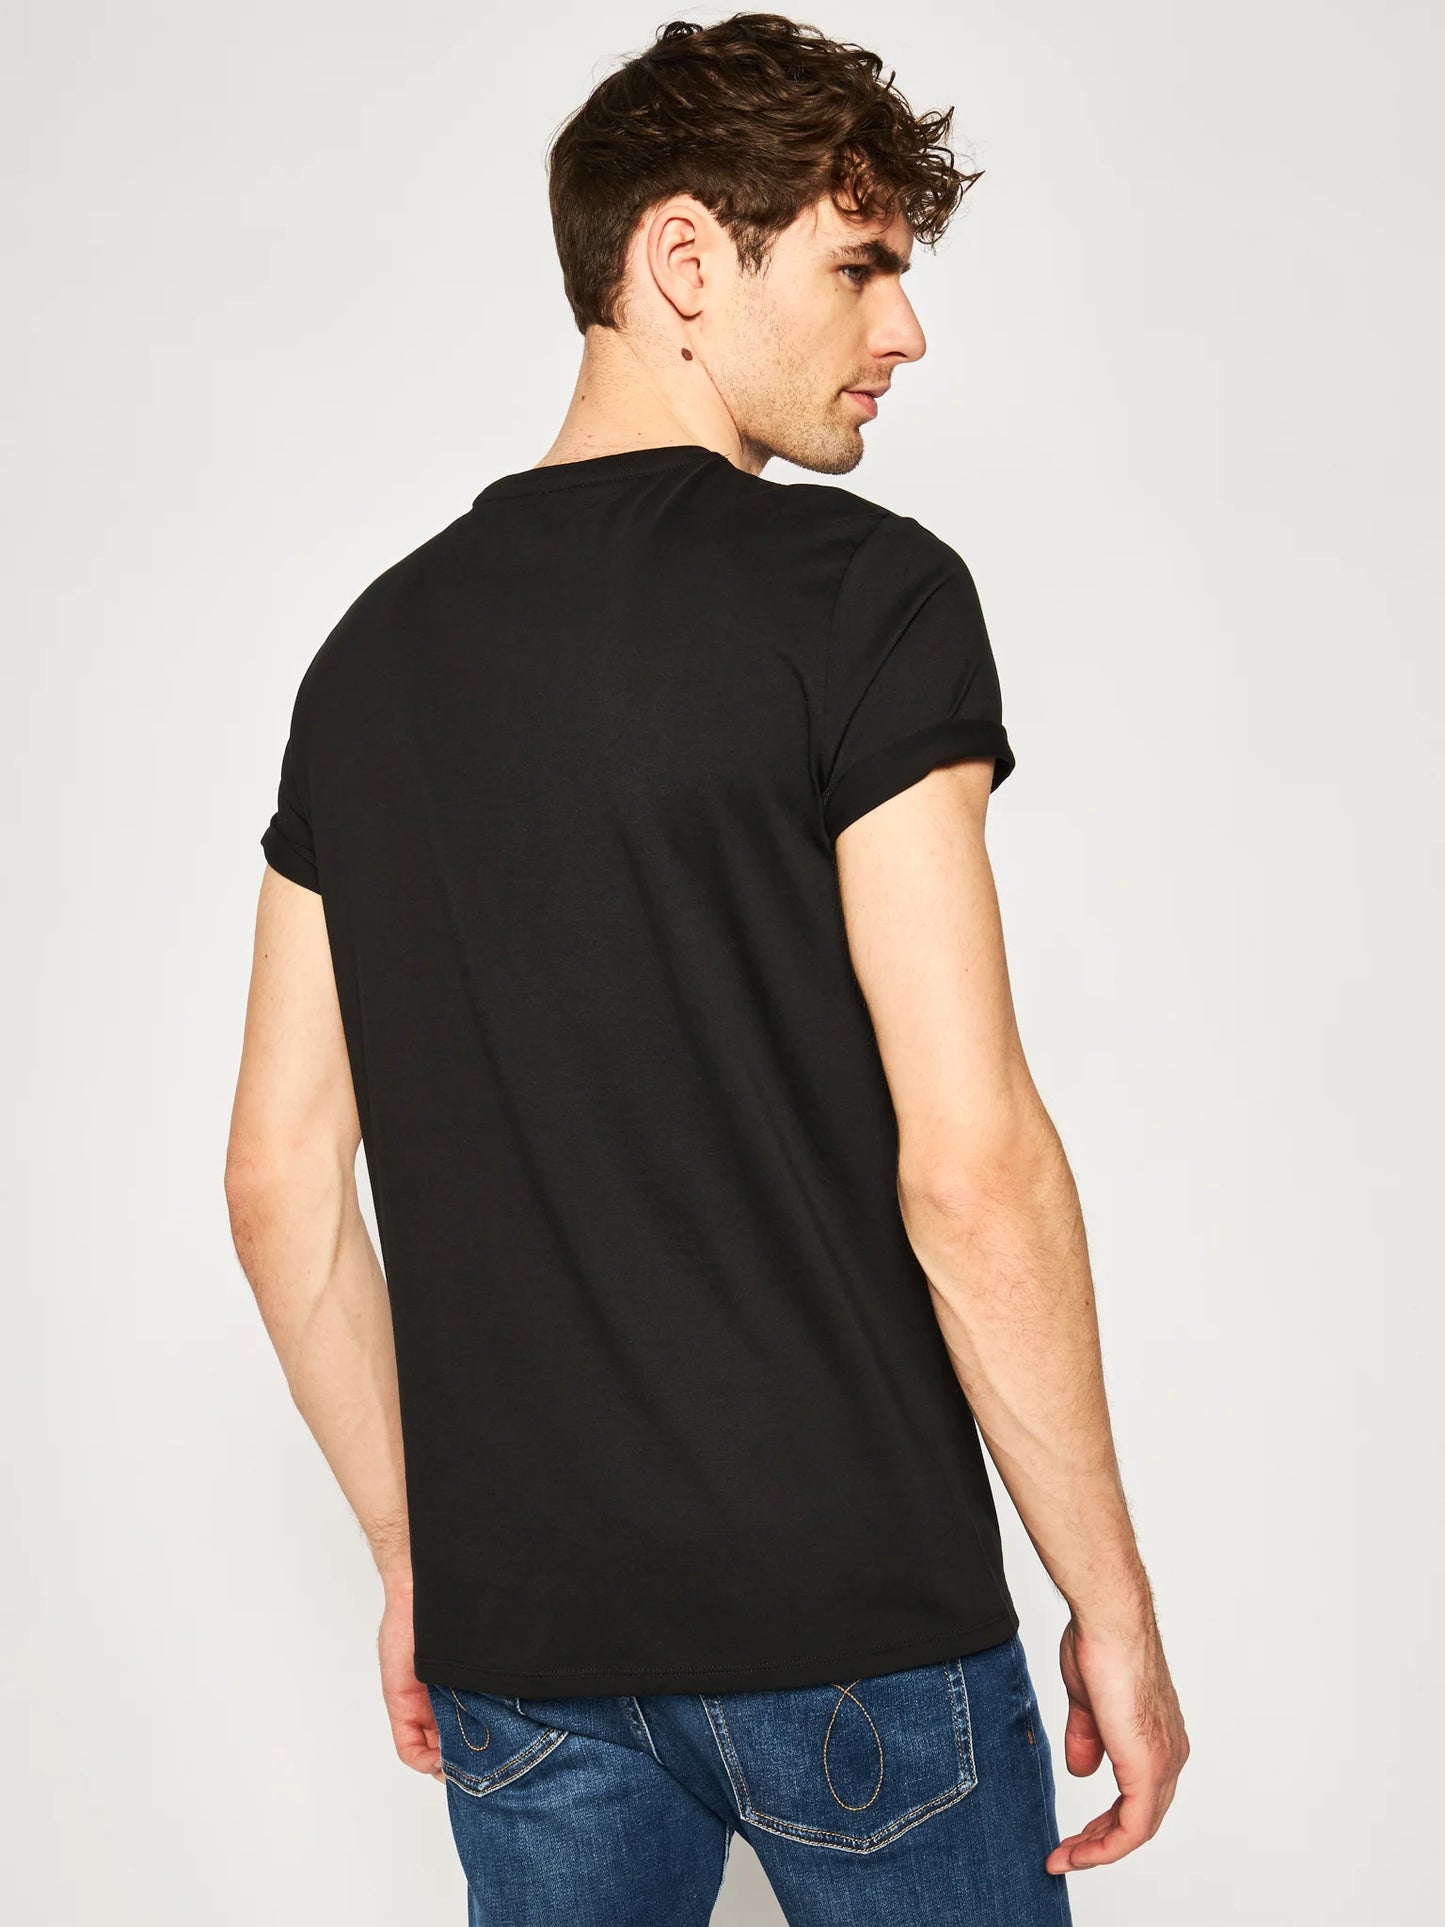 T-Shirt Col Rond En Jersey De Coton Pima Uni Lacoste de couleur Noir